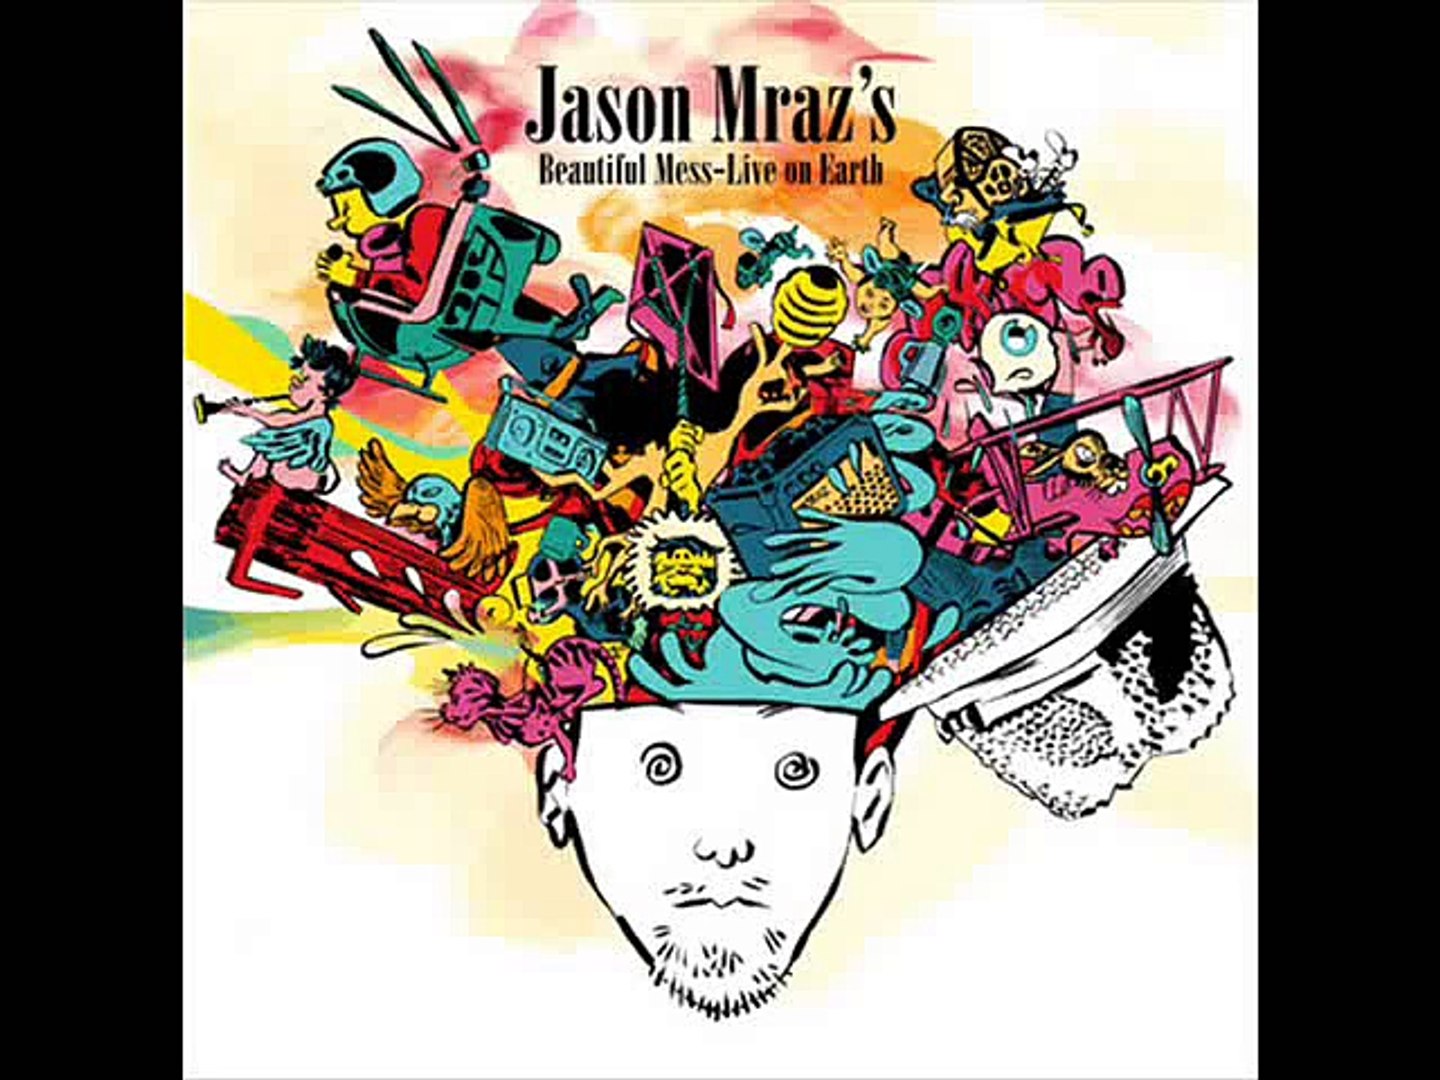 Jason Mraz - Coyotes